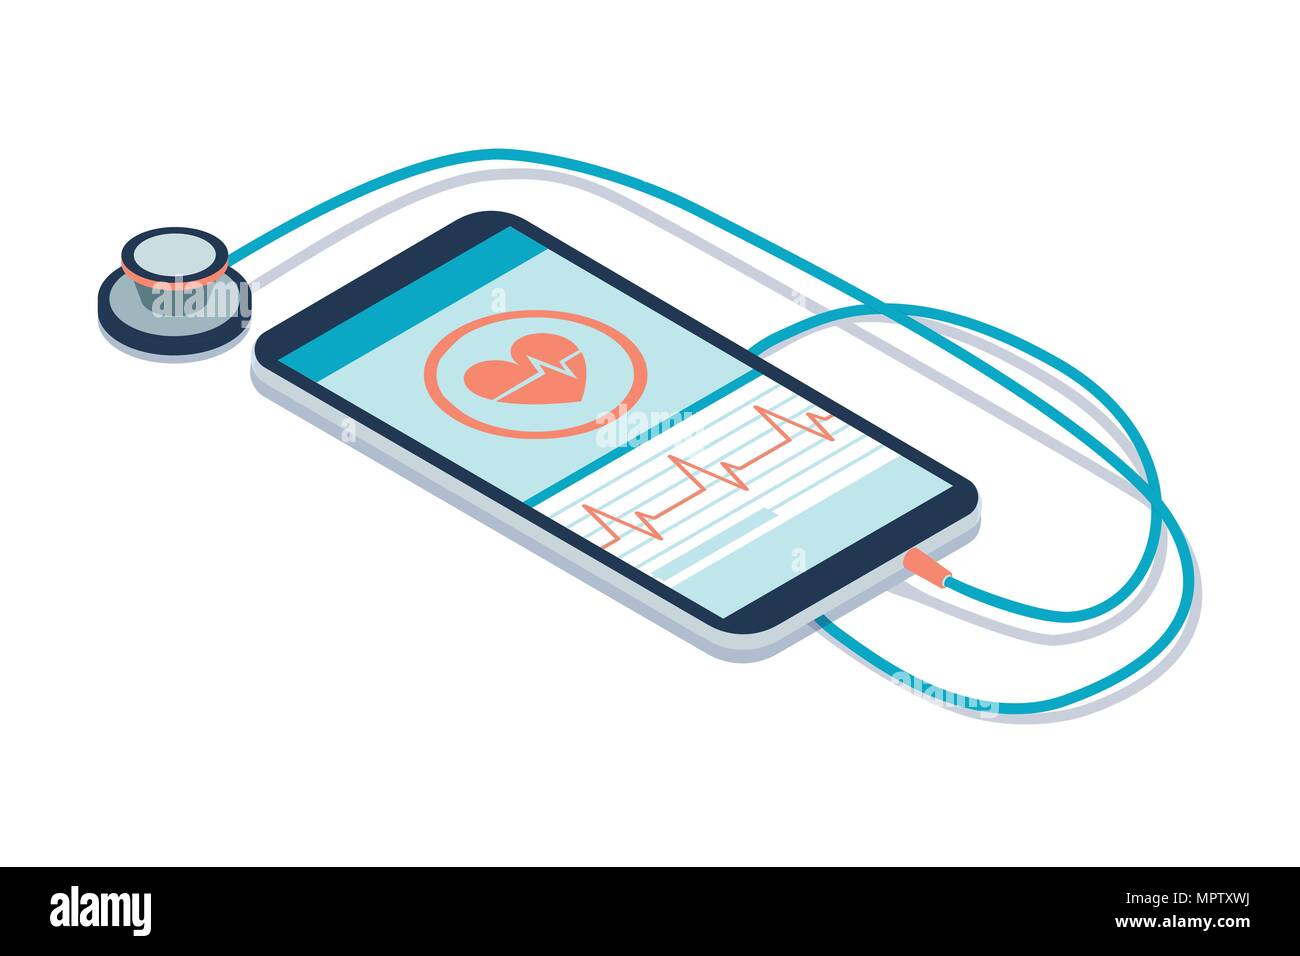 Digitales Stethoskop zu einem Smartphone und Symbole verbunden: innovative medizinische Diagnose- und Technologiekonzept Stock Vektor